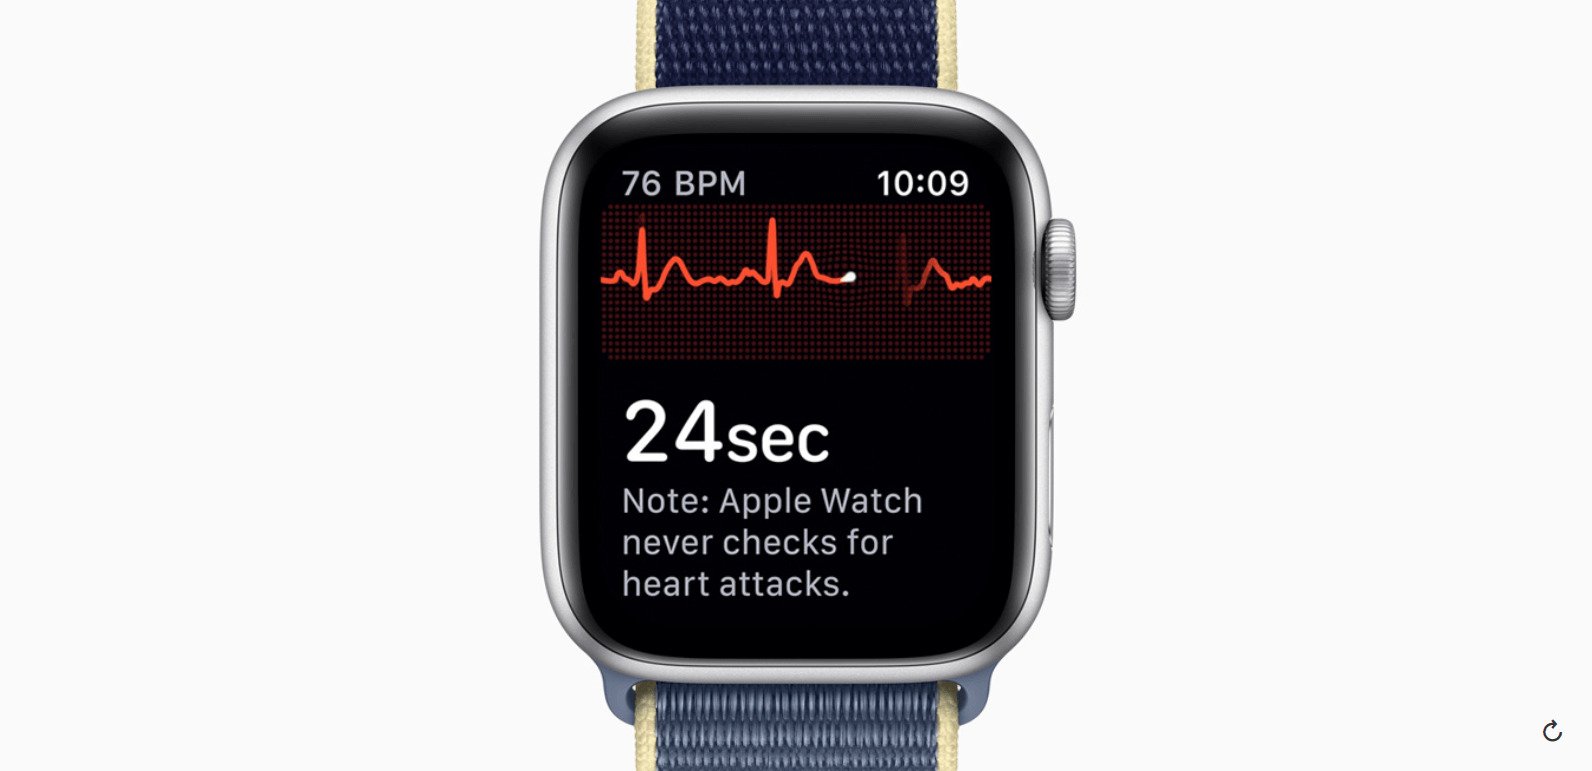 Theo dõi sức khỏe  Đây là một tính năng rất hữu ích của Apple Watch. Việc đeo Apple Watch thường xuyên sẽ theo dõi được nhịp tim của người dùng cũng như tổng thể sức khỏe, đo lượng oxy trong máu. Apple Watch chỉ mất 15s để đo lượng oxy, theo dõi thống kê và thông báo định kỳ nồng độ oxy trong máu. 